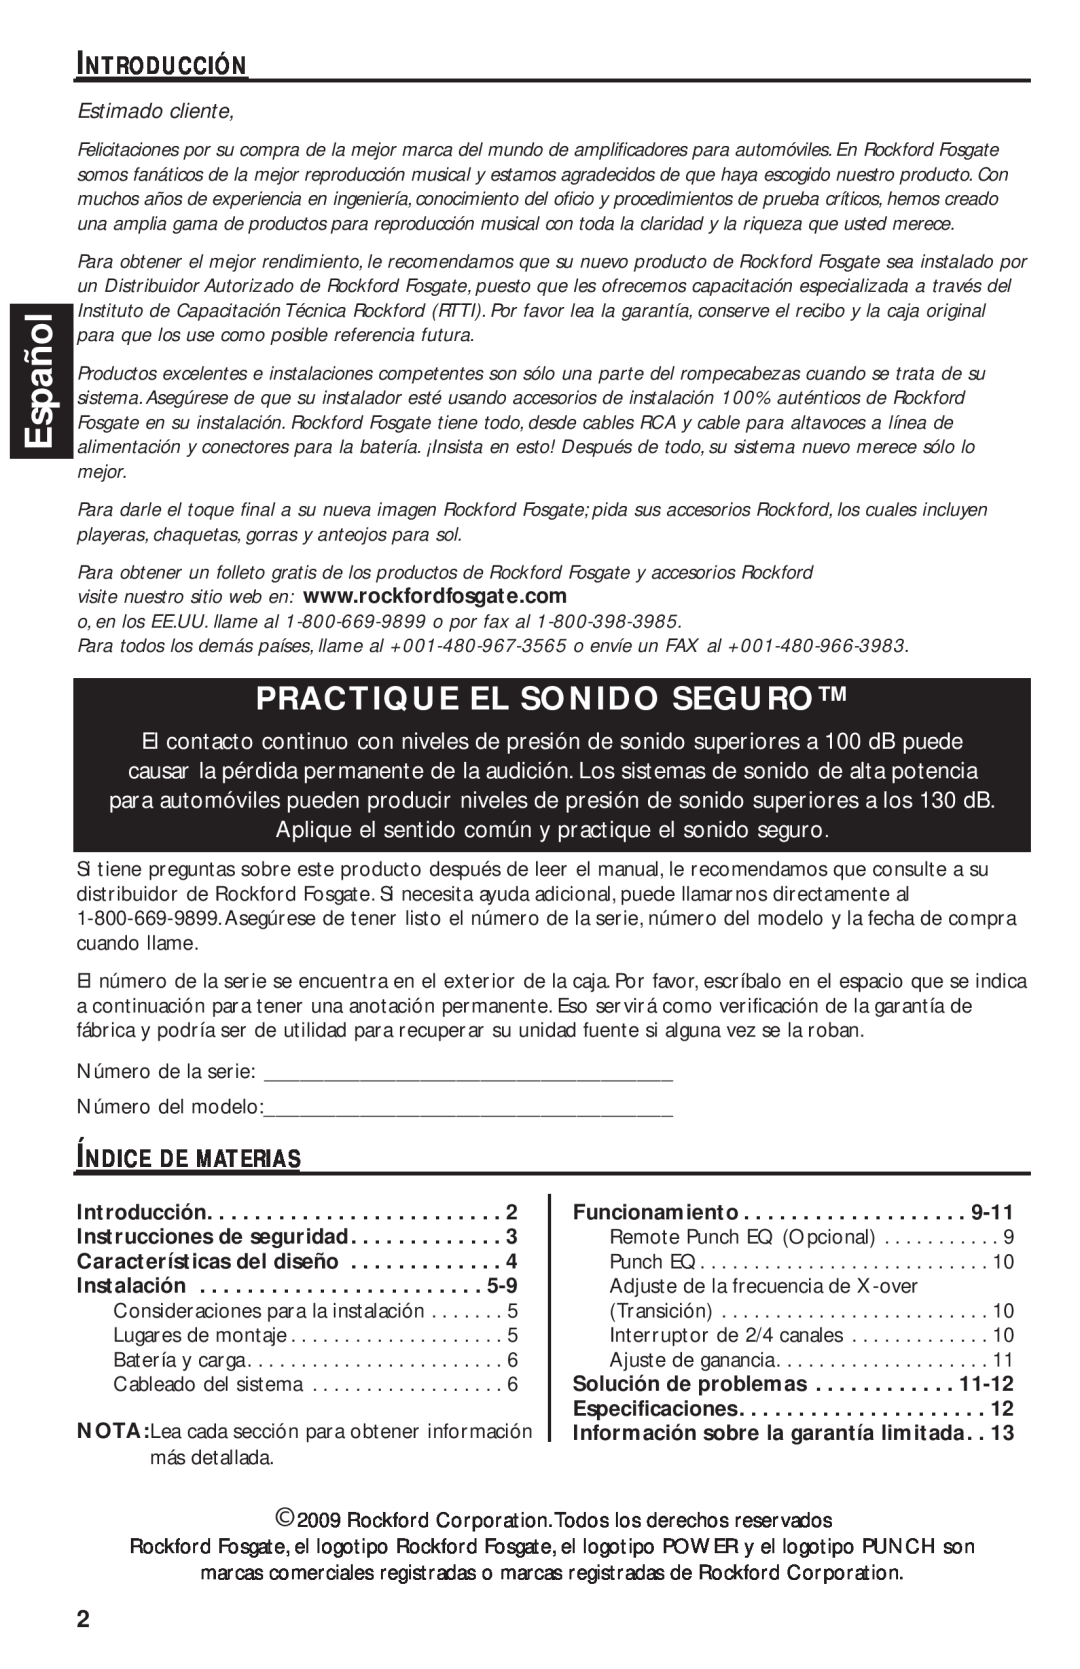 Rockford Fosgate T1000-4 manual Español, Practique El Sonido Seguro, Estimado cliente 